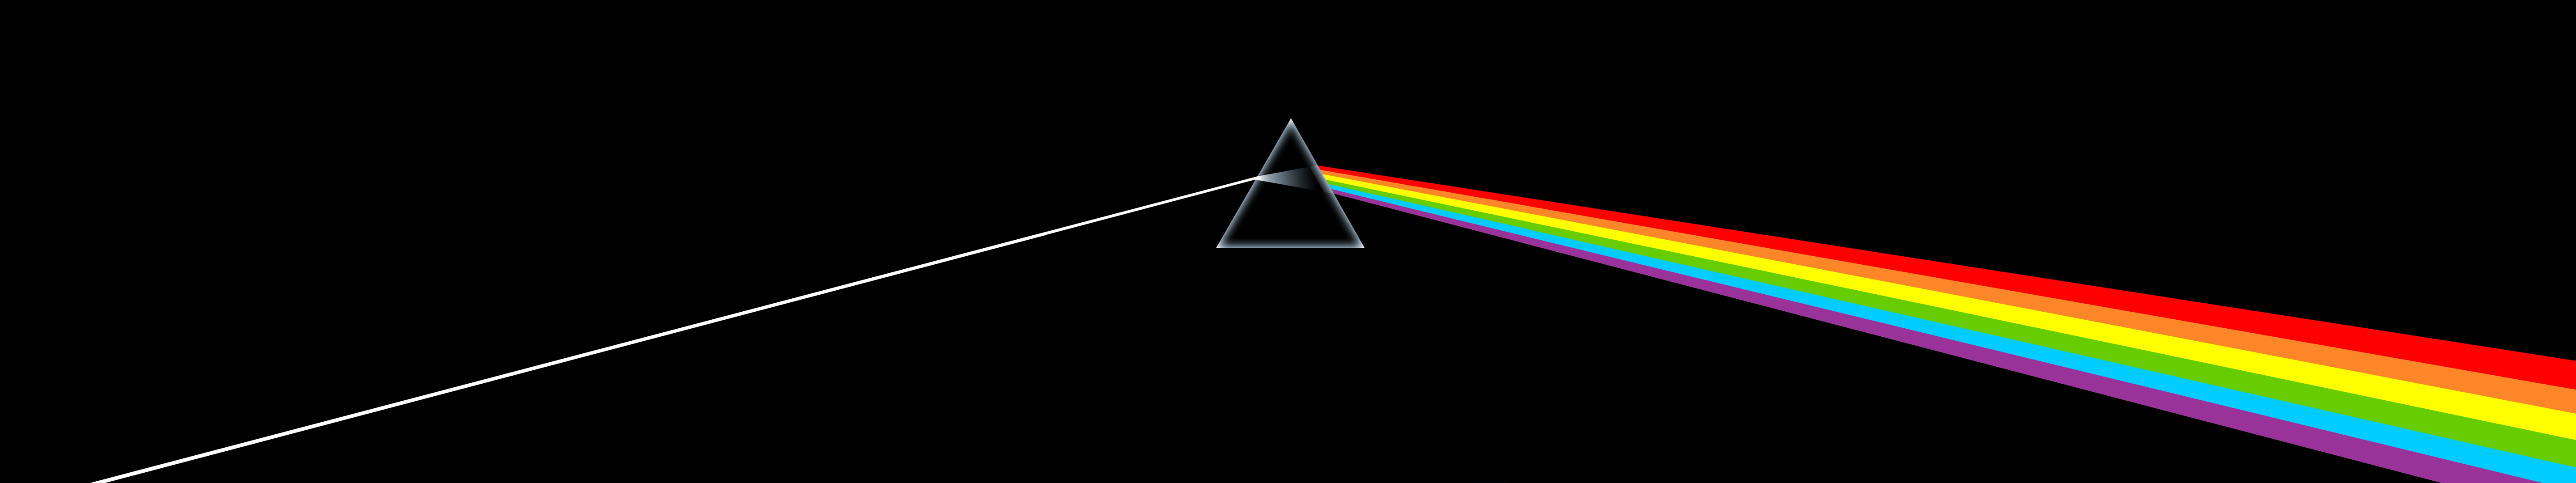 prism, Floyd, Dark Side of the Moon